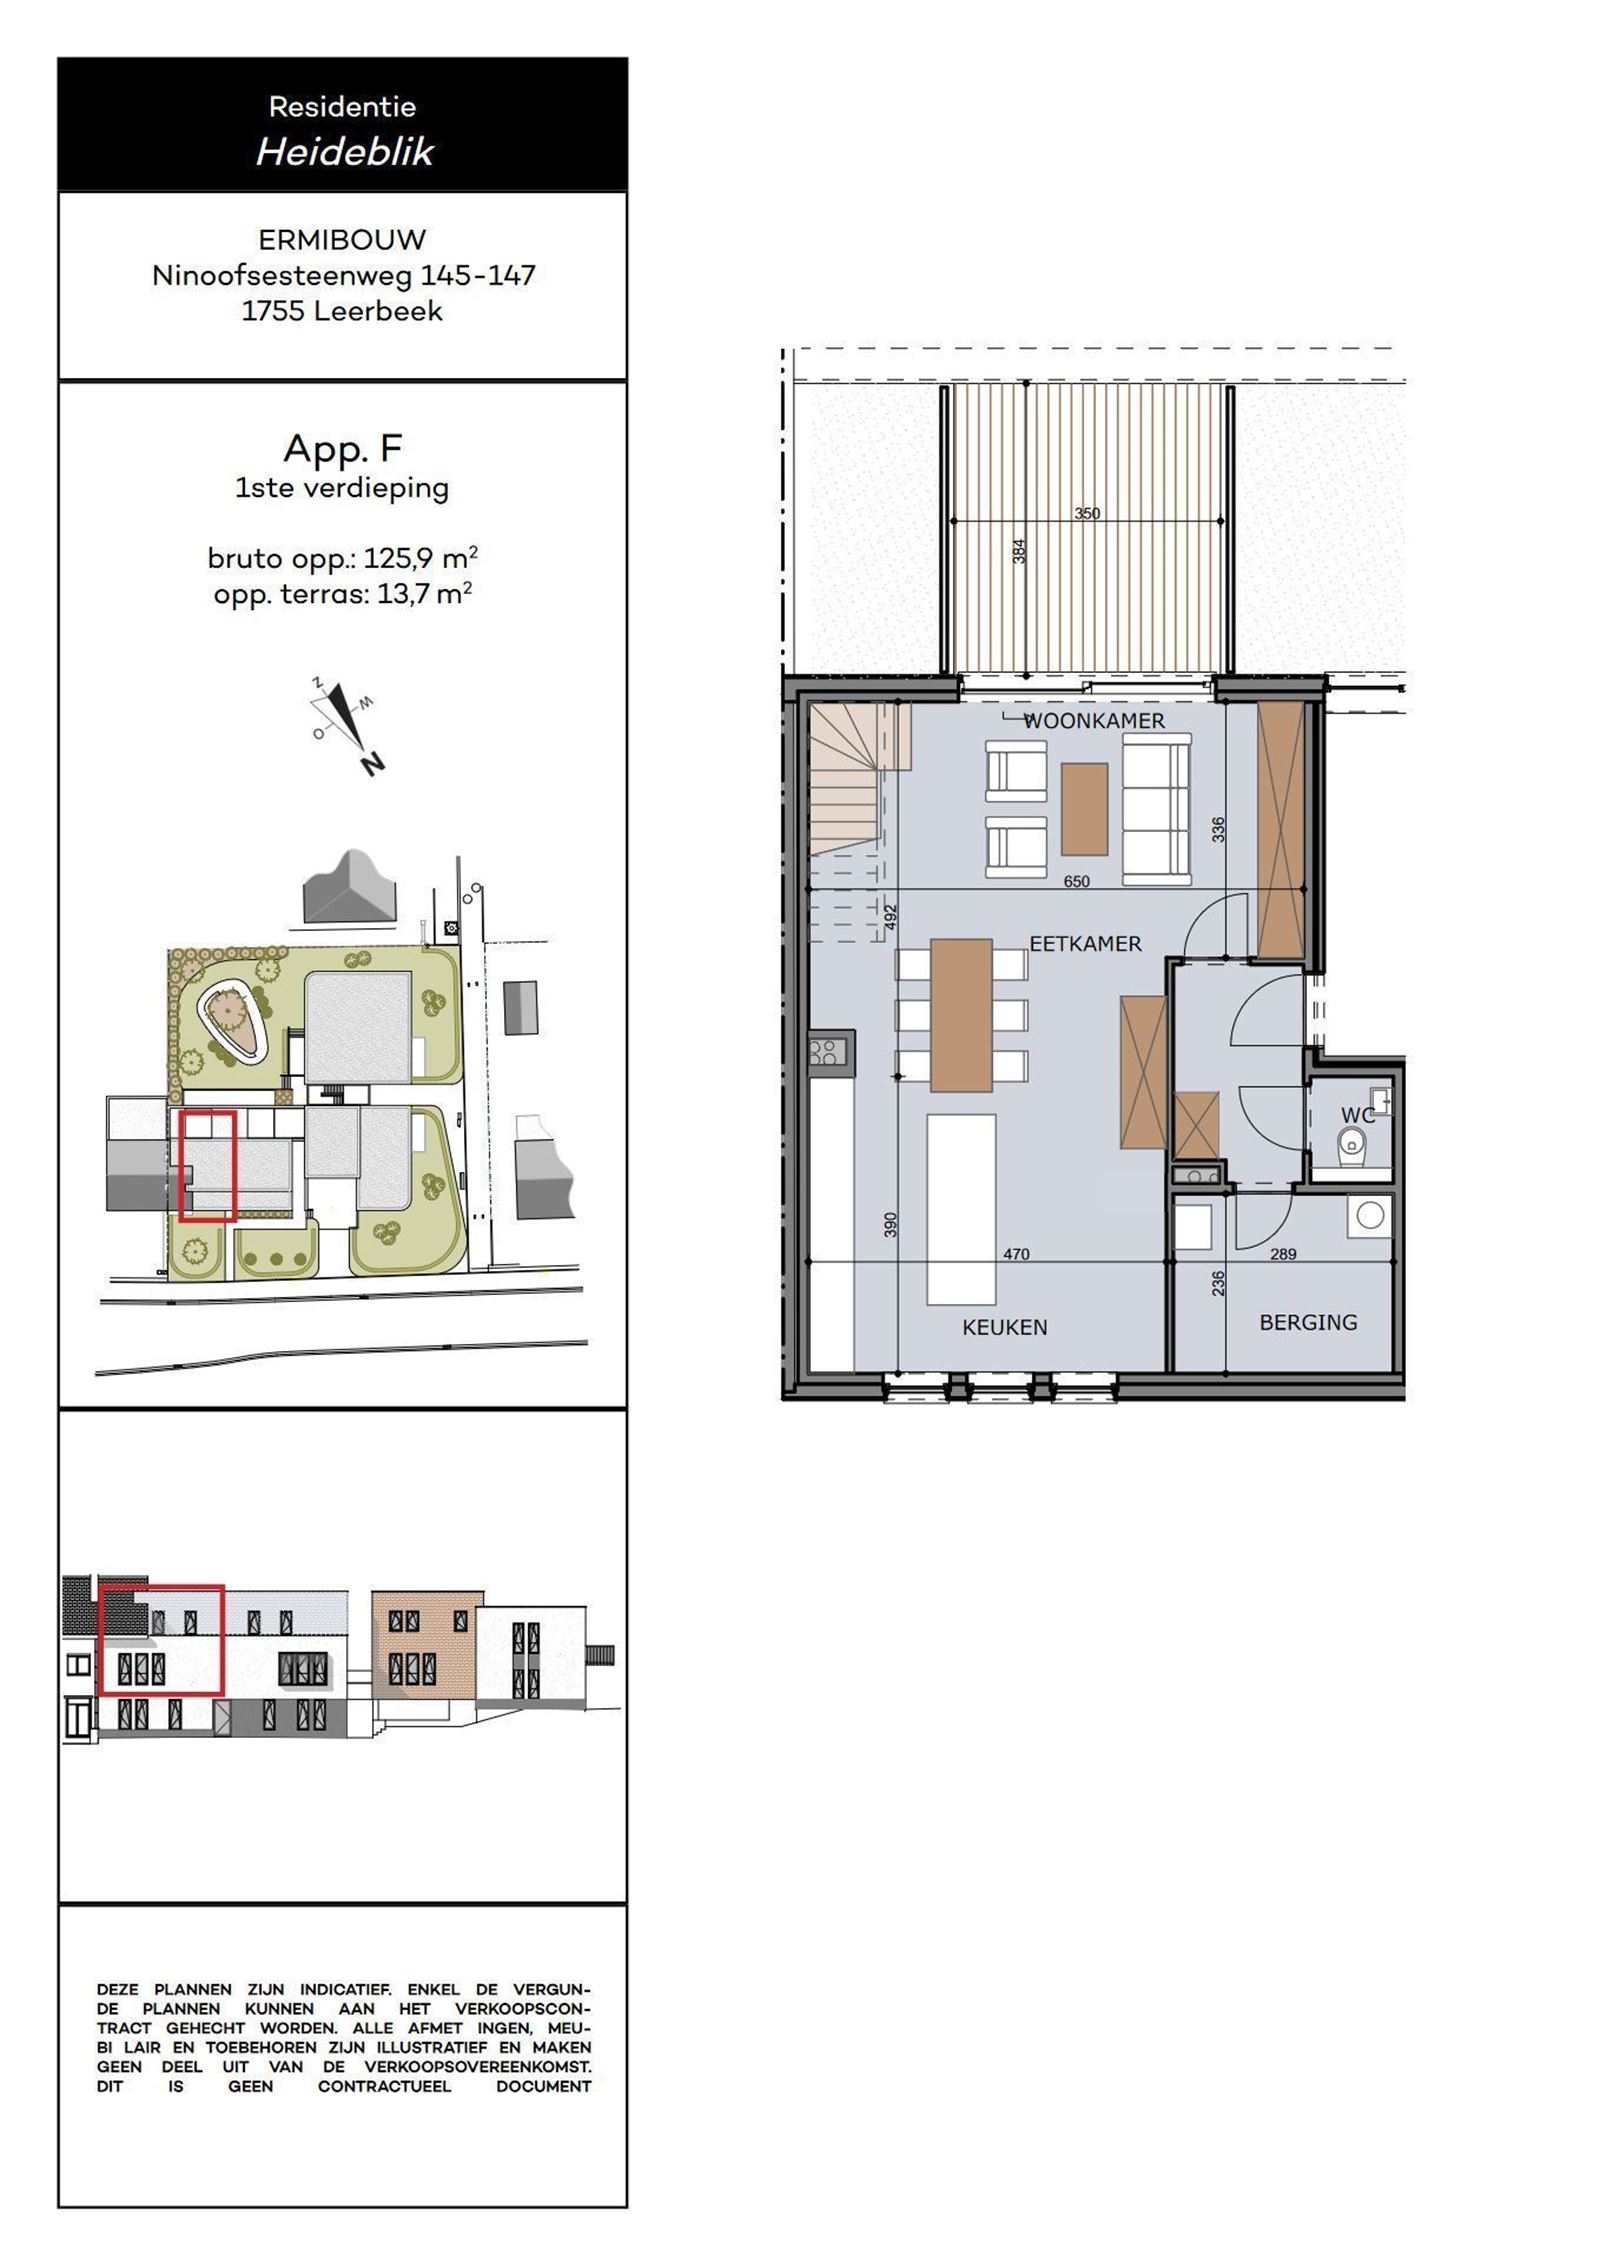 Duplex-appartement met 3 slaapkamers, terras,  parkeerplaats en kelder foto 16